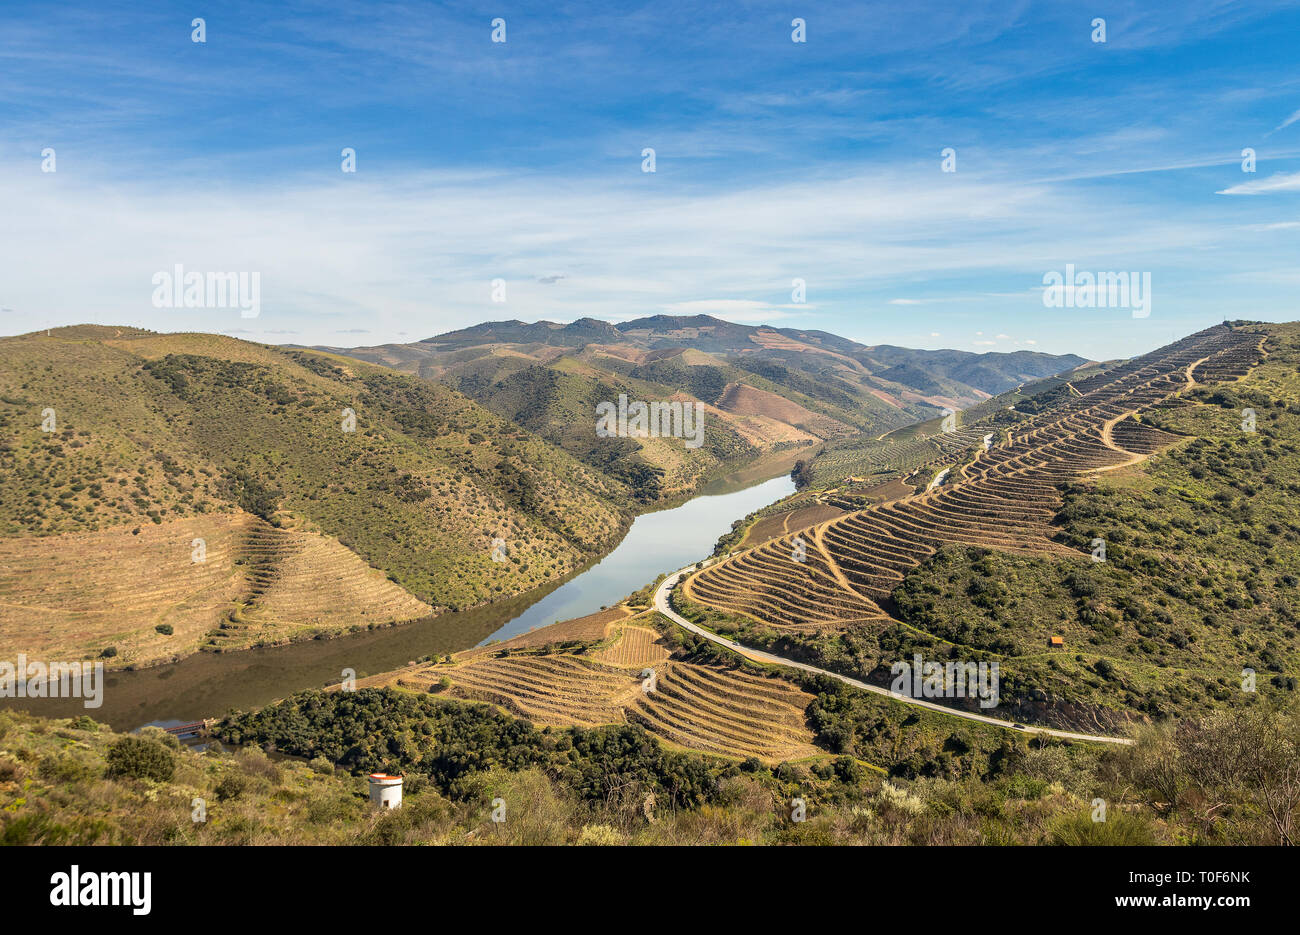 El paisaje del río Duero serpentea a través de las montañas, con las terrazas de los viñedos del vino de Oporto, cerca de la desembocadura del río Coa. Foto de stock